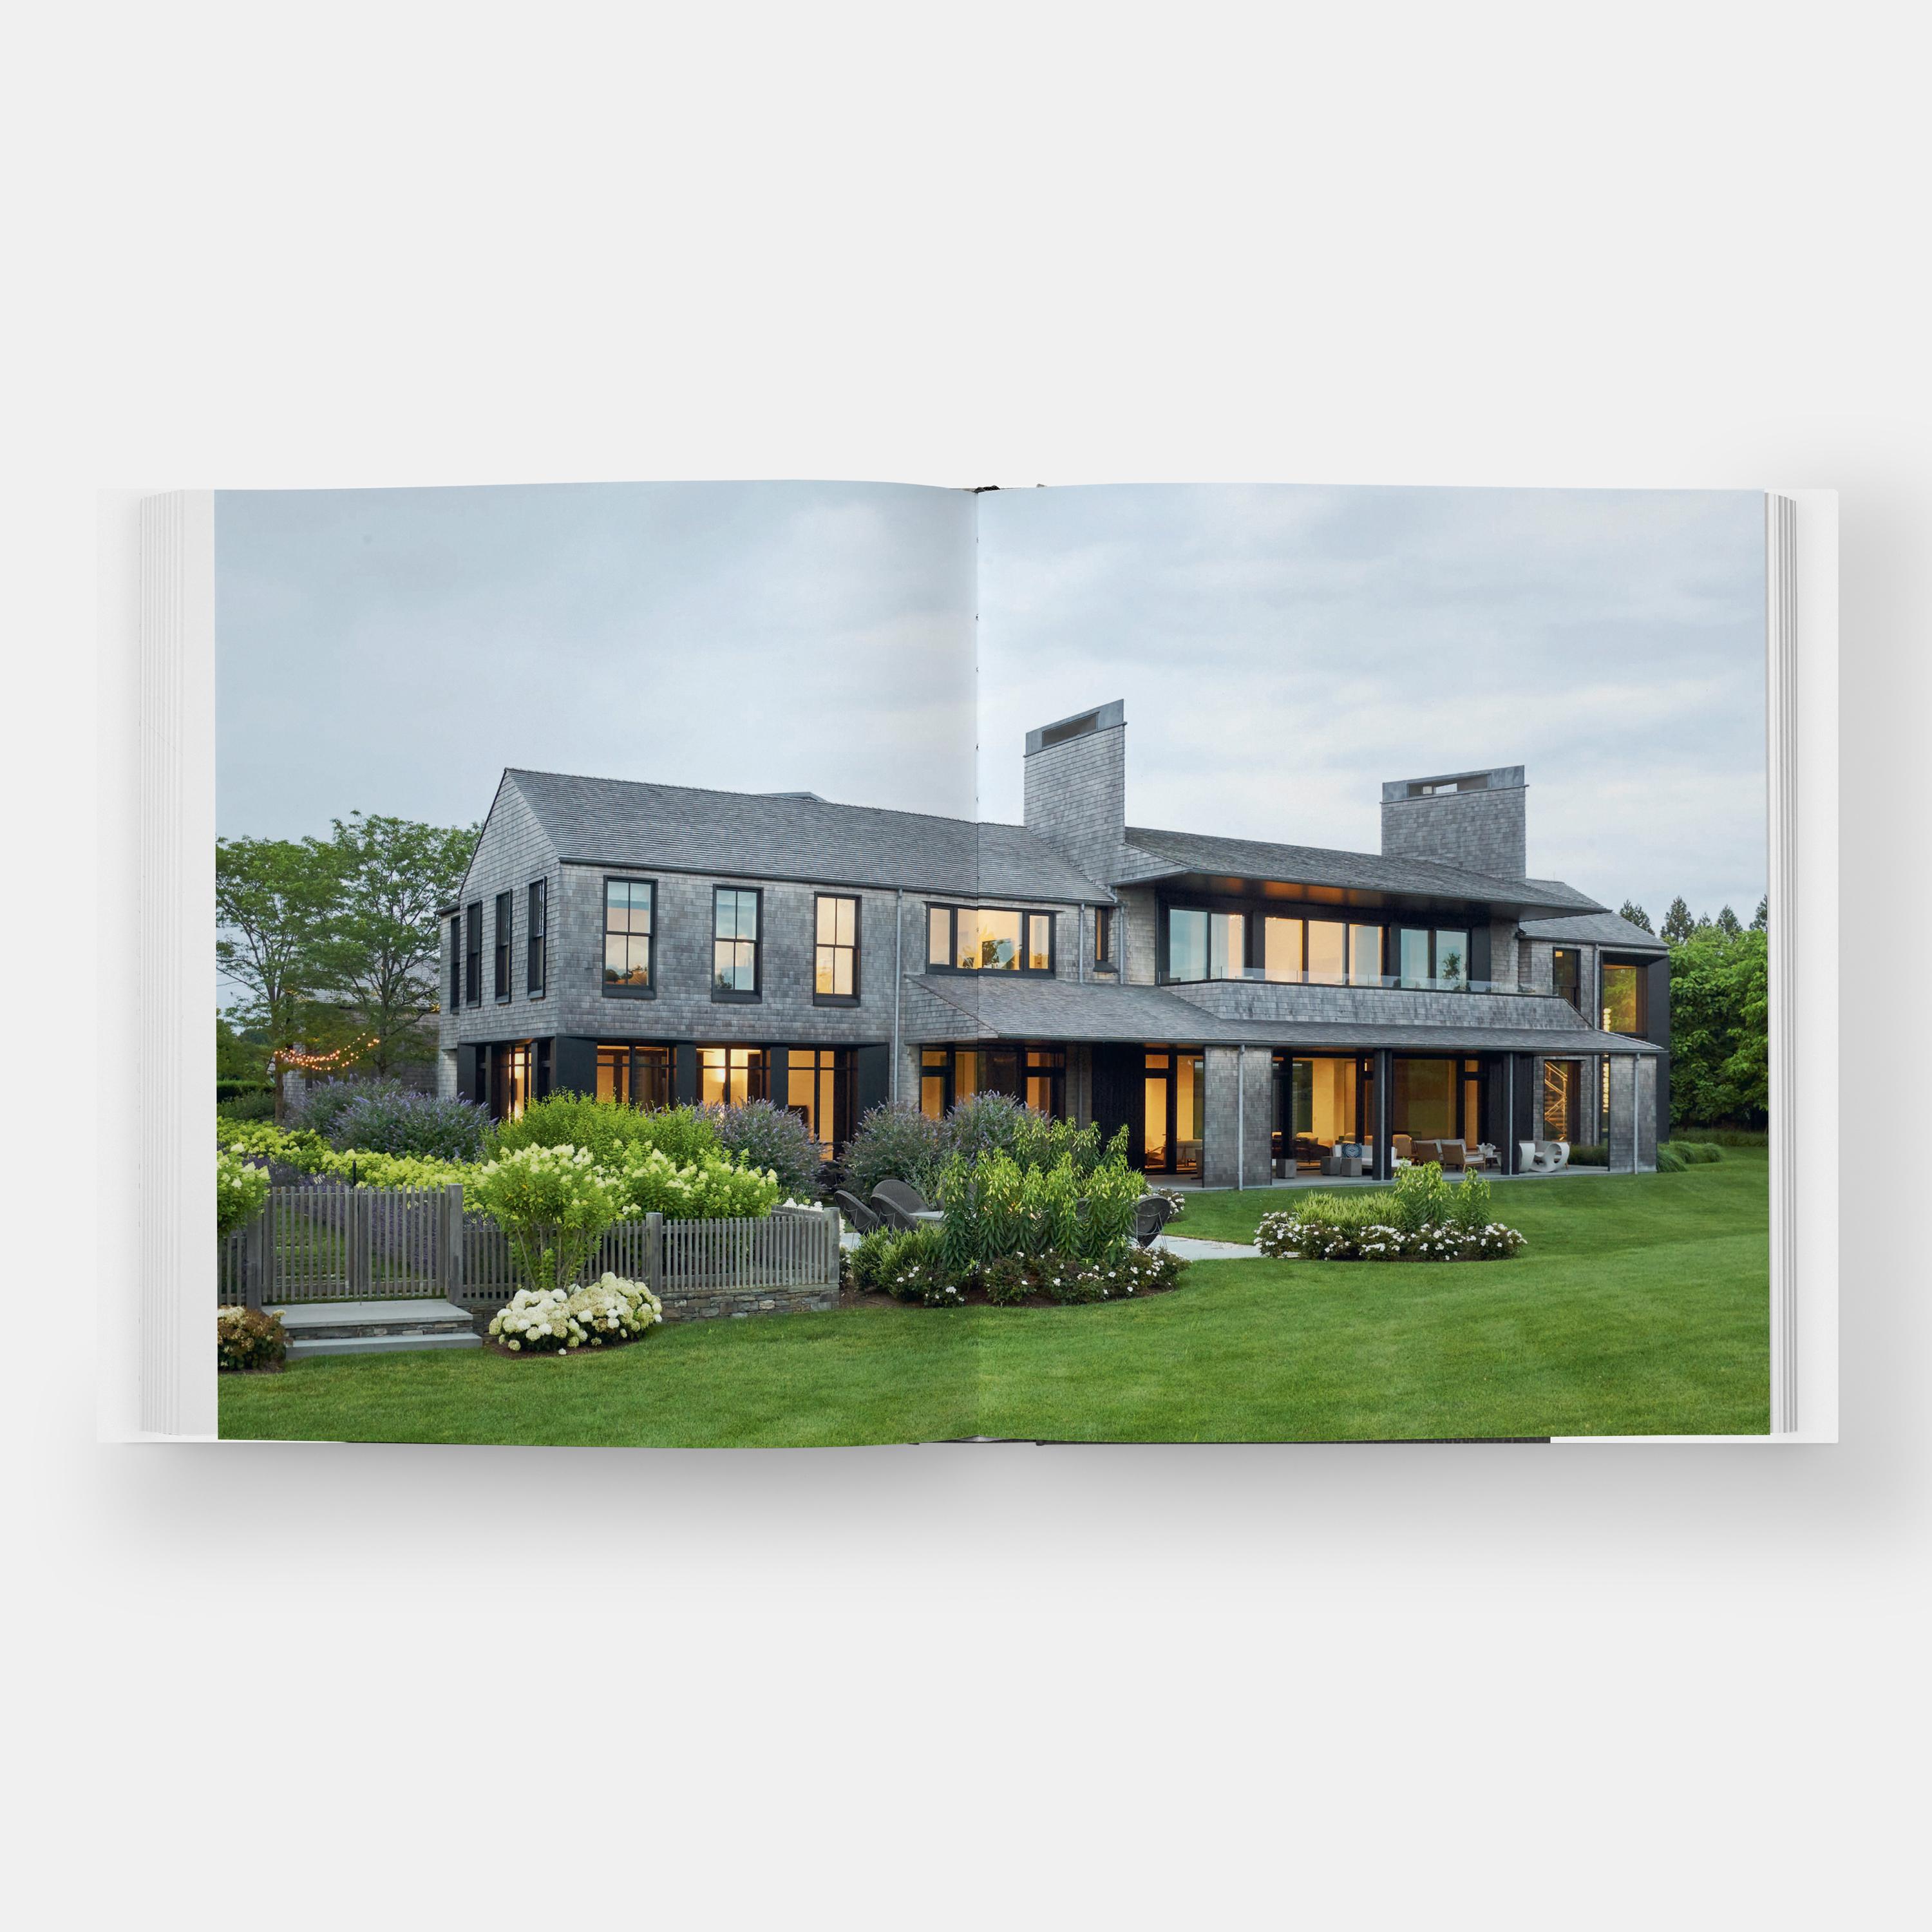 Eine luxuriöse neue Monografie, die eine Auswahl der eleganten und prächtigen Häuser des renommierten Architekten Thomas Kligerman präsentiert.

In den letzten vierzig Jahren hat sich Thomas Kligerman mit der Geschichte der Wohnarchitektur befasst